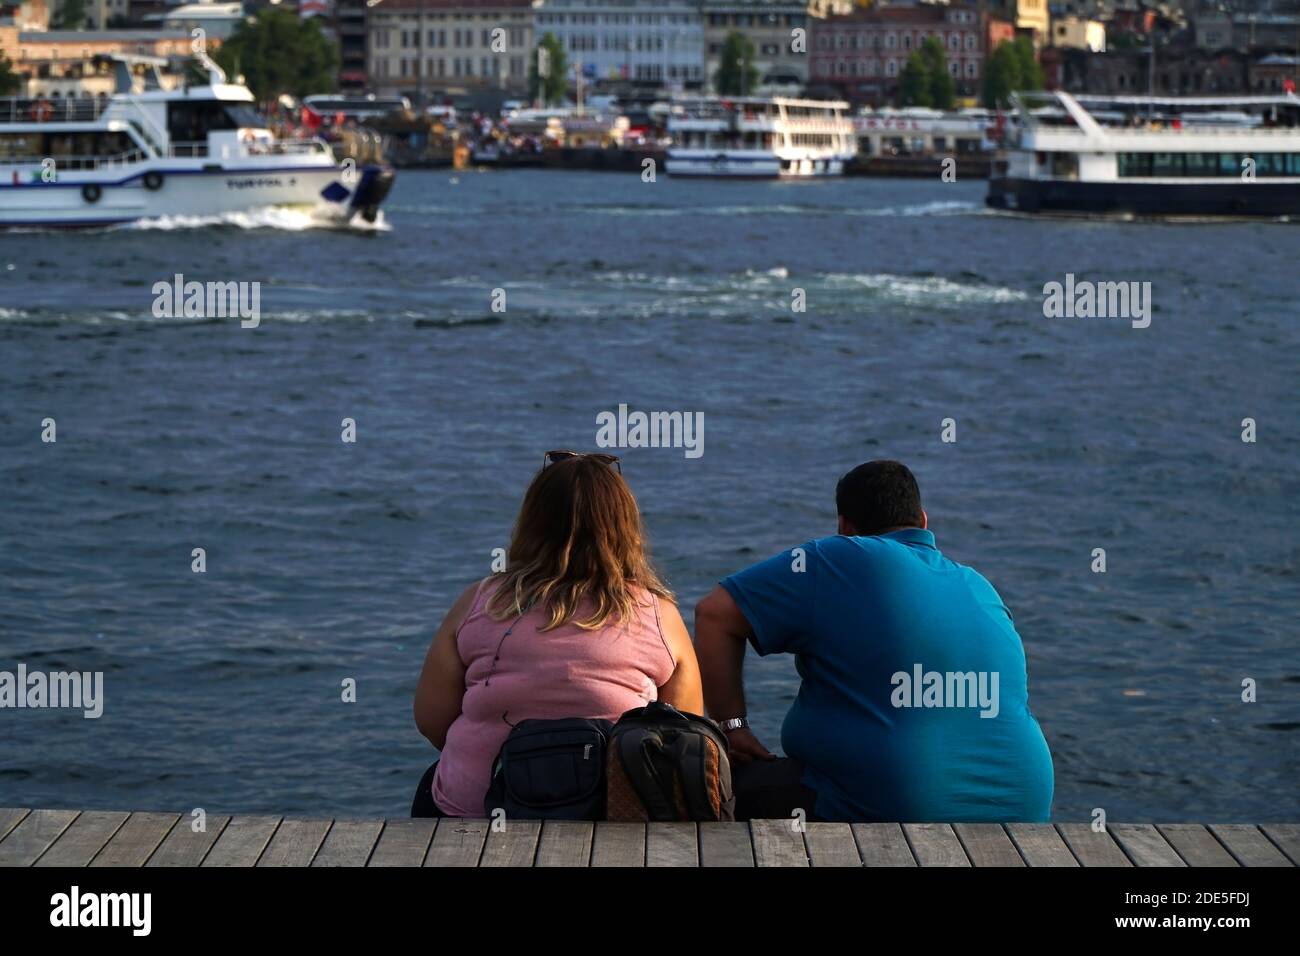 Istanbul, Turquie - 13 juillet 2019 : un jeune couple obèse est assis et regarde le paysage à la Corne d'Or, Istanbul. Il y a aussi des bateaux de visite. Banque D'Images